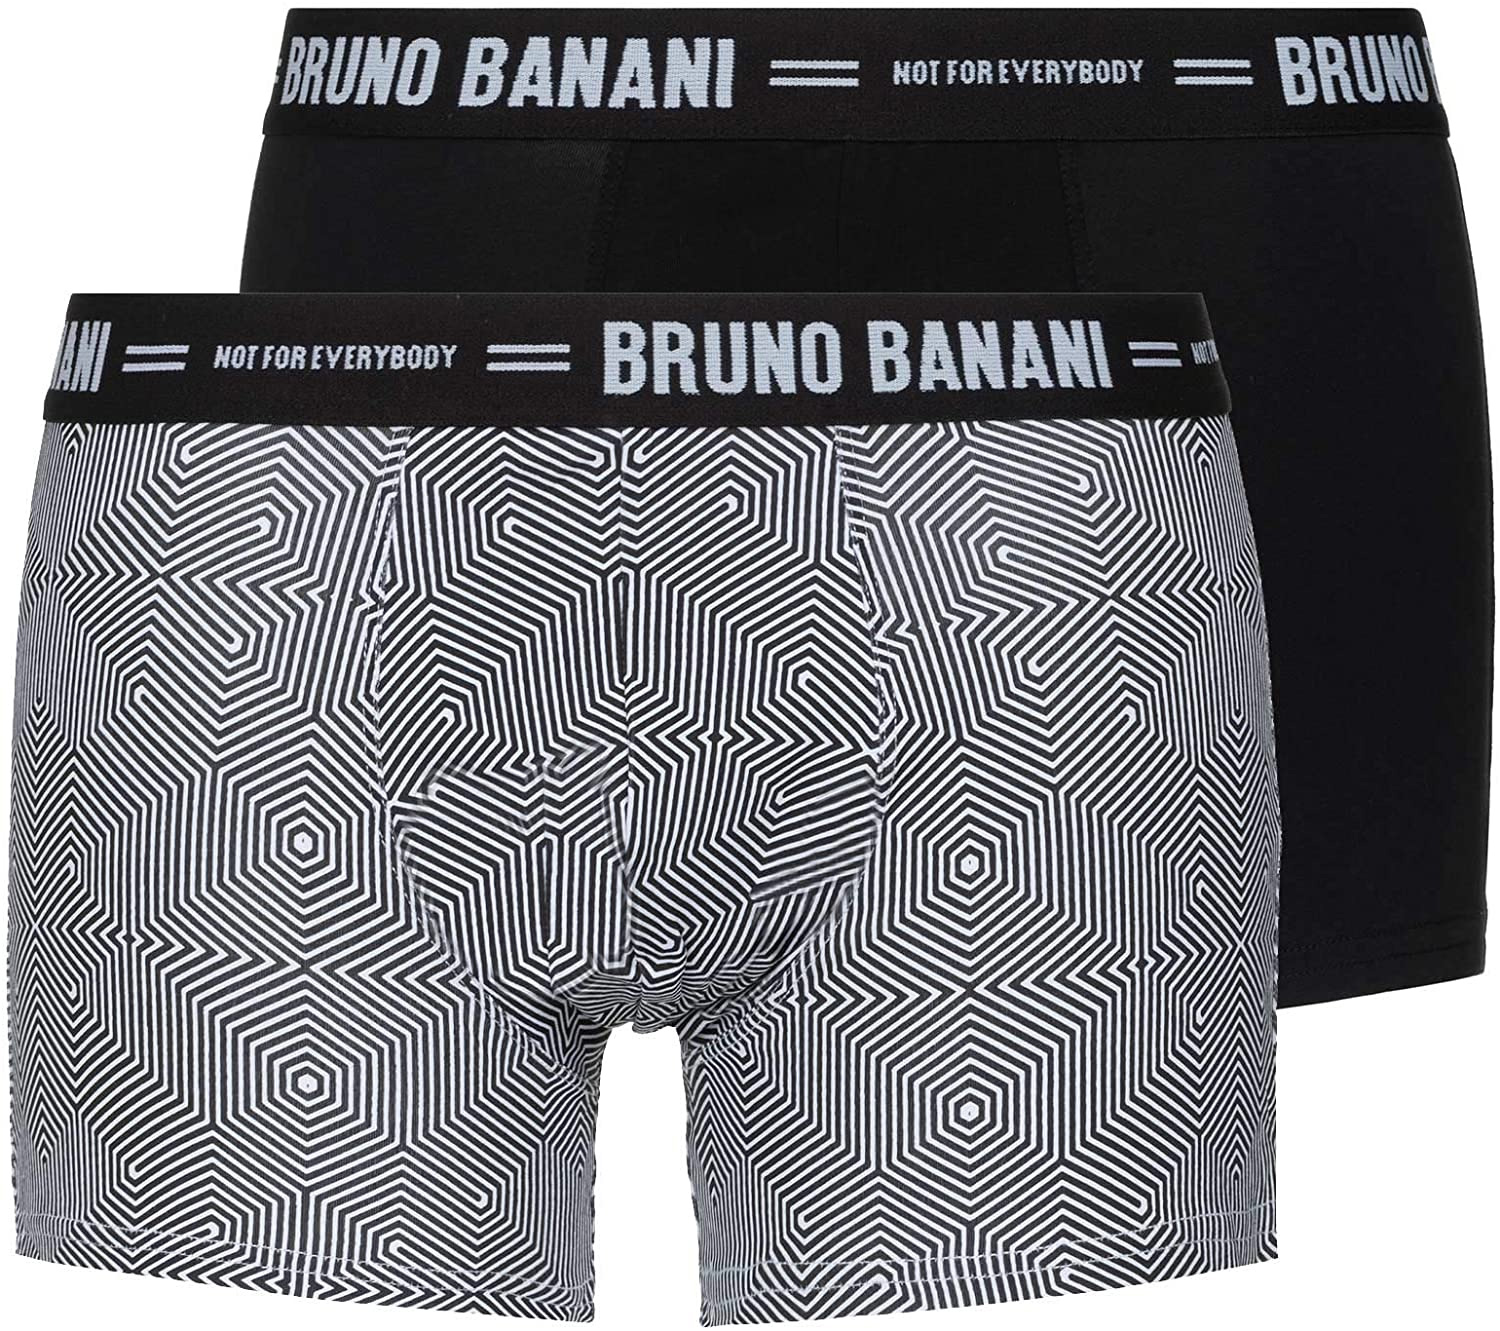 Комплект трусов боксеров (2 шт) 2201-2228 Scratch Bruno banani рис. 1